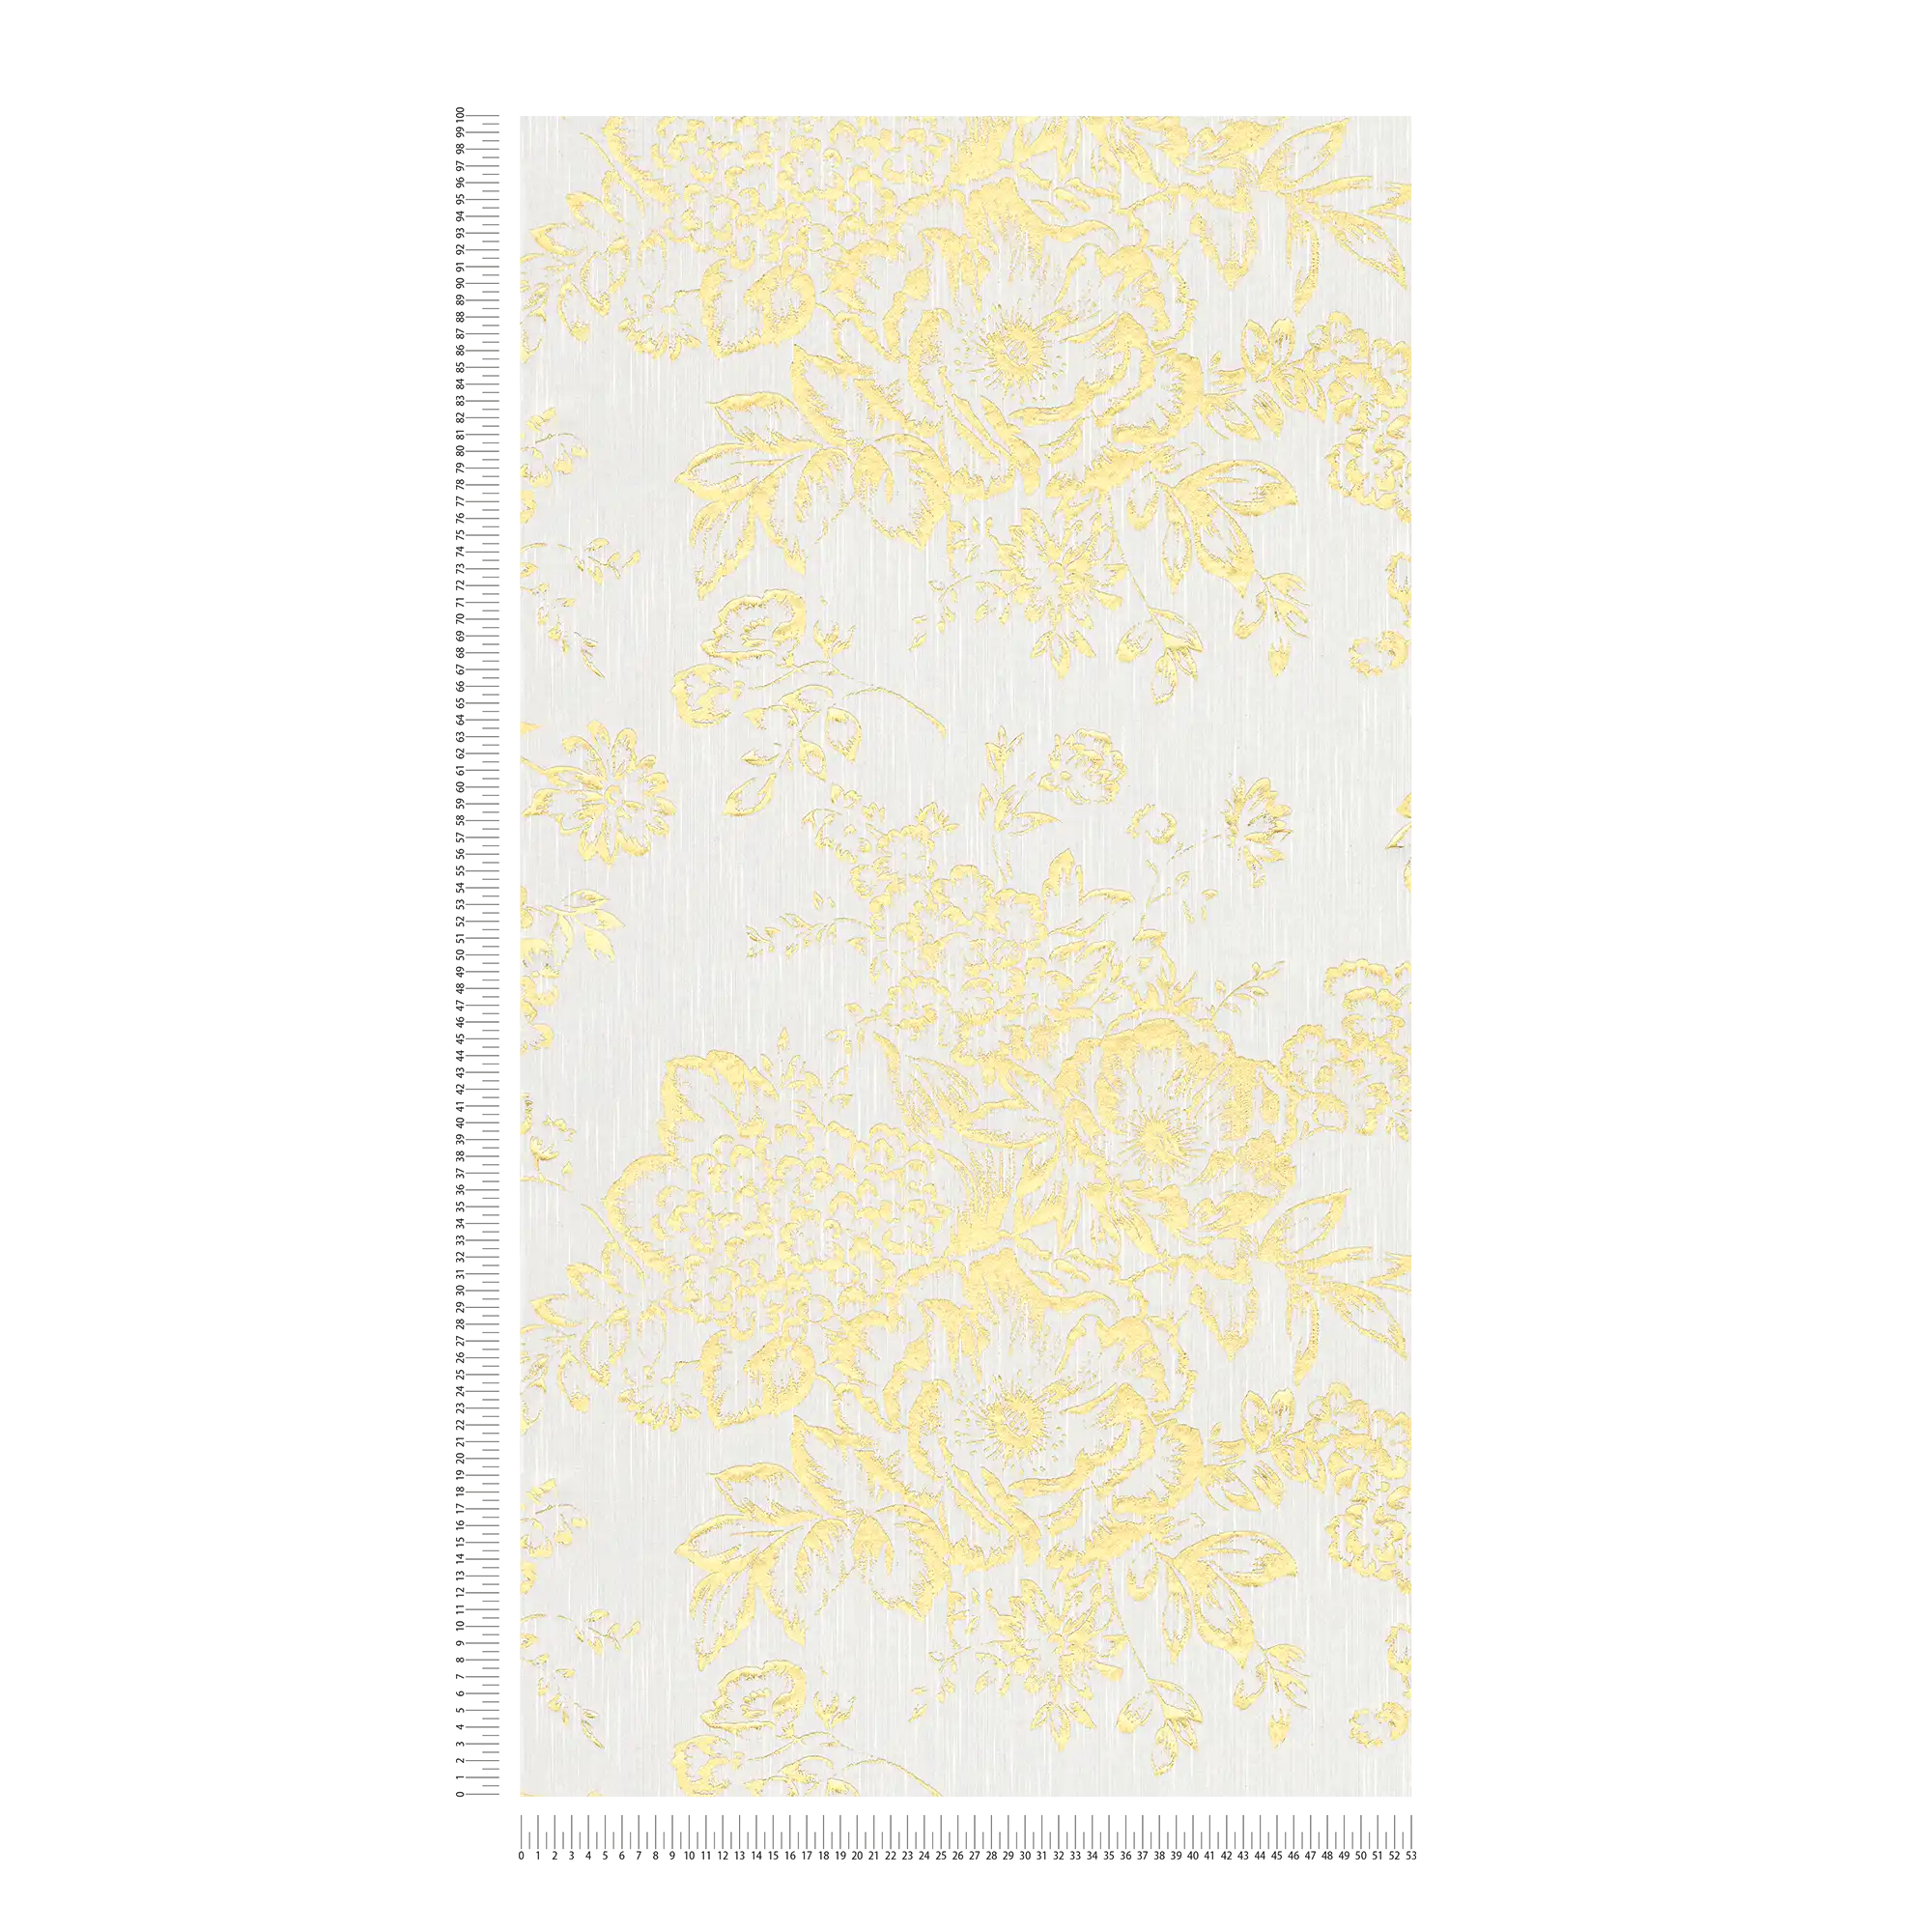             Textuurbehang met gouden bloemenpatroon - goud, wit
        